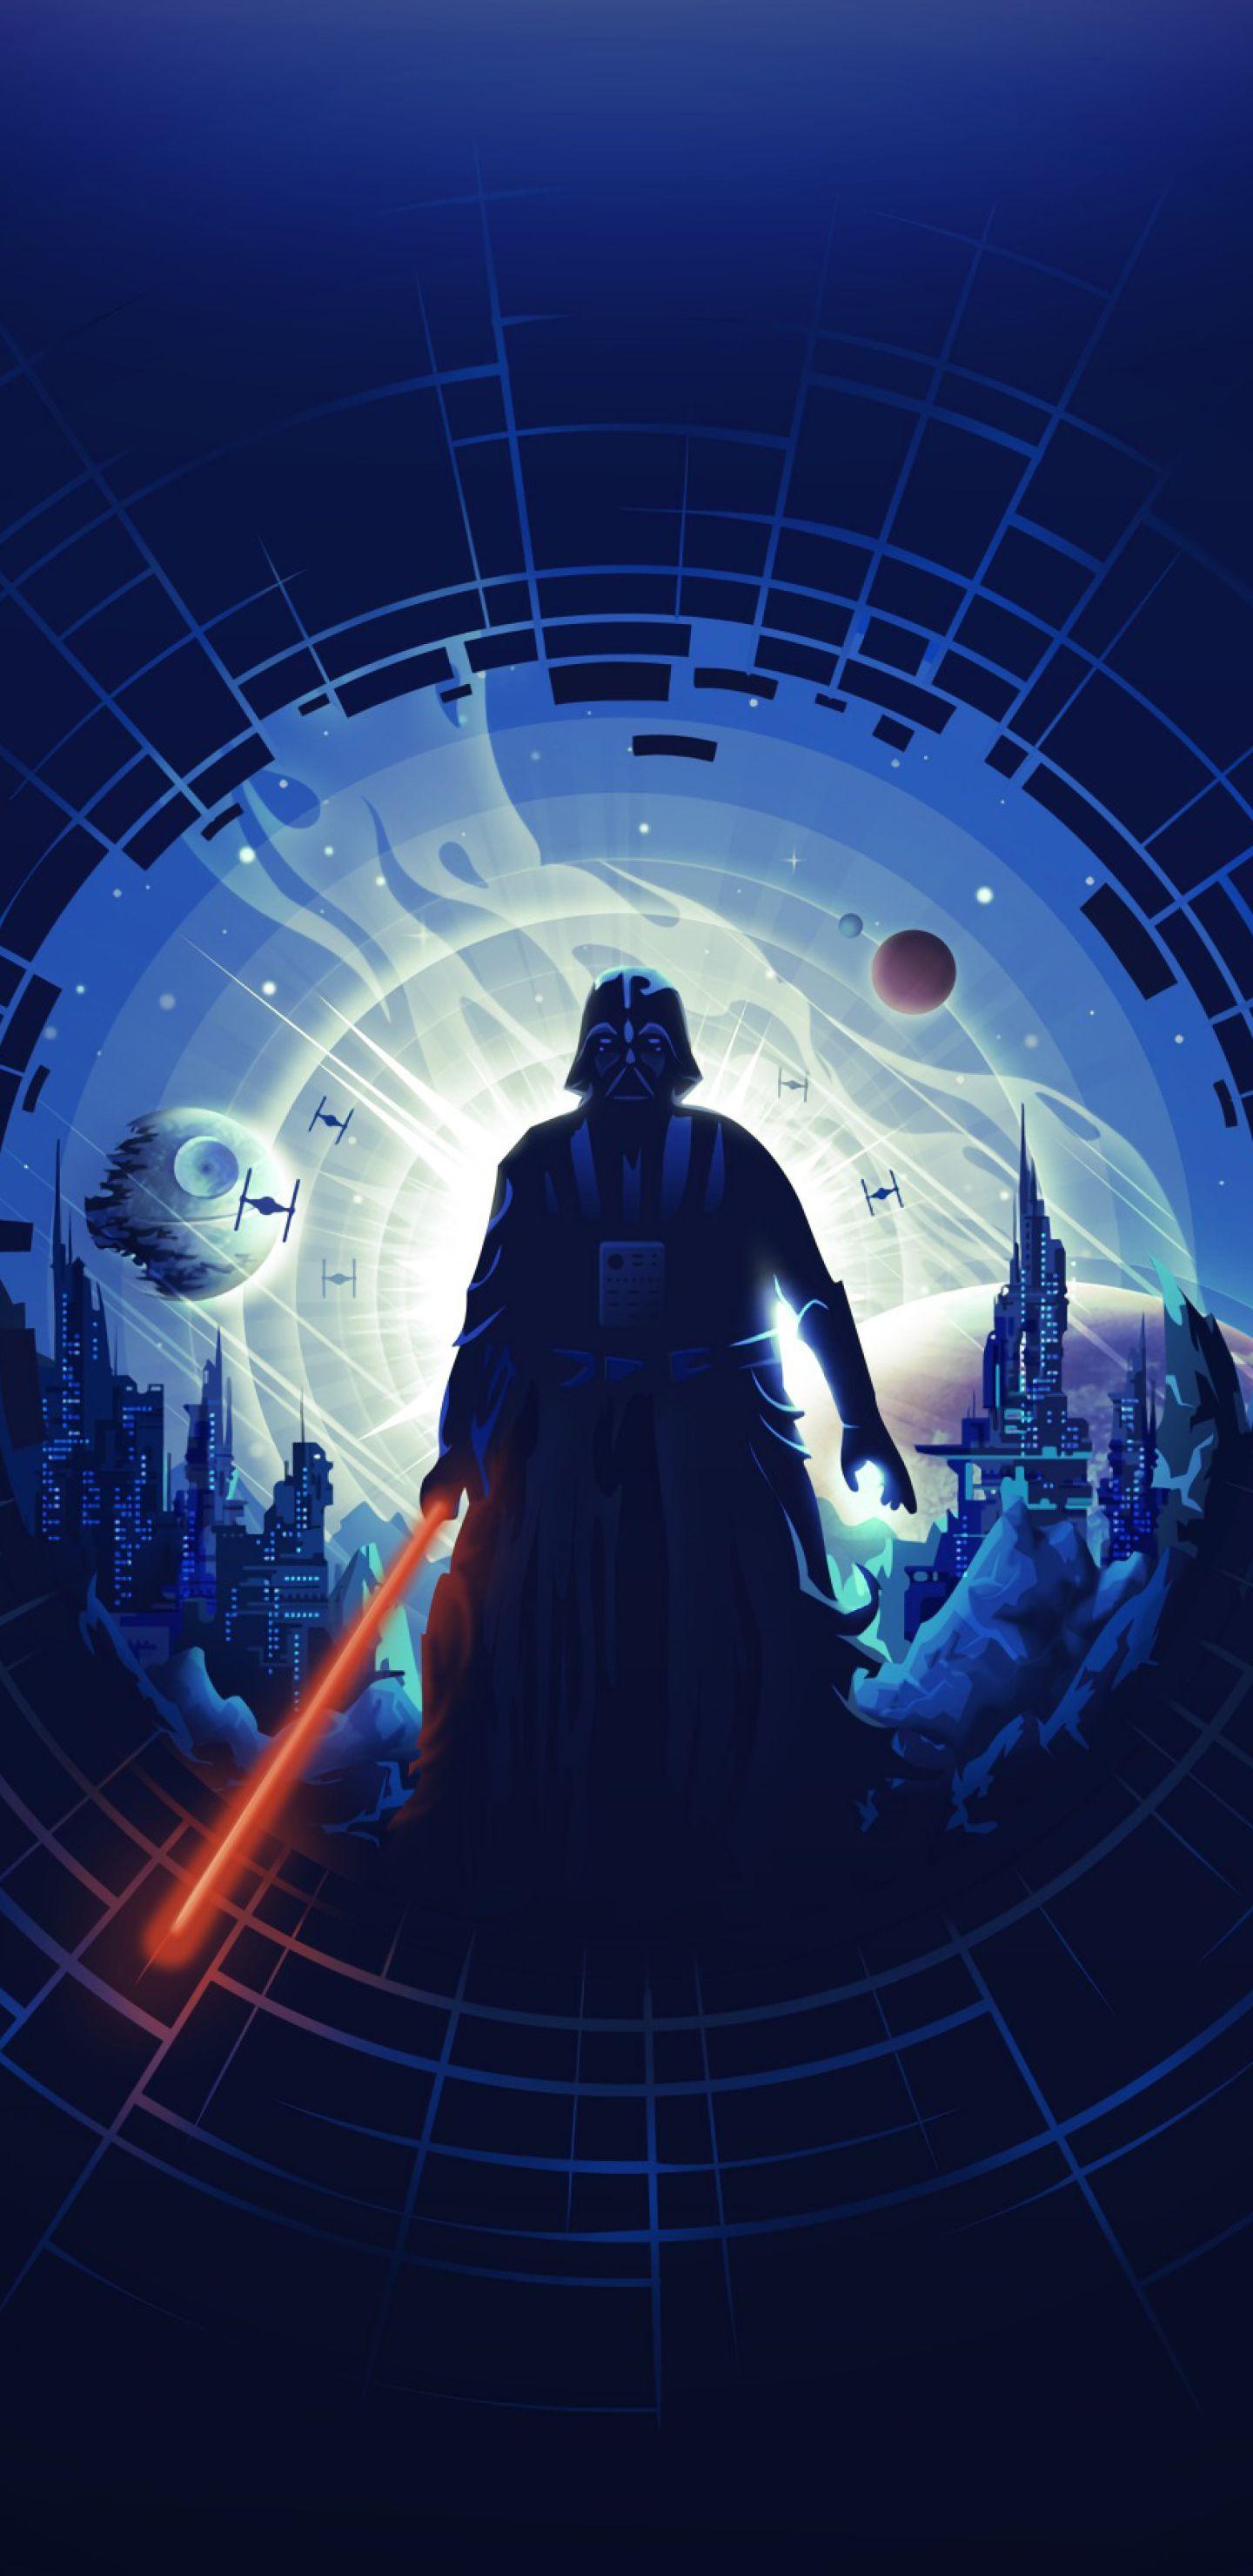 Darth Vader Stormtroopers Star Wars HD 4K Wallpaper 81430